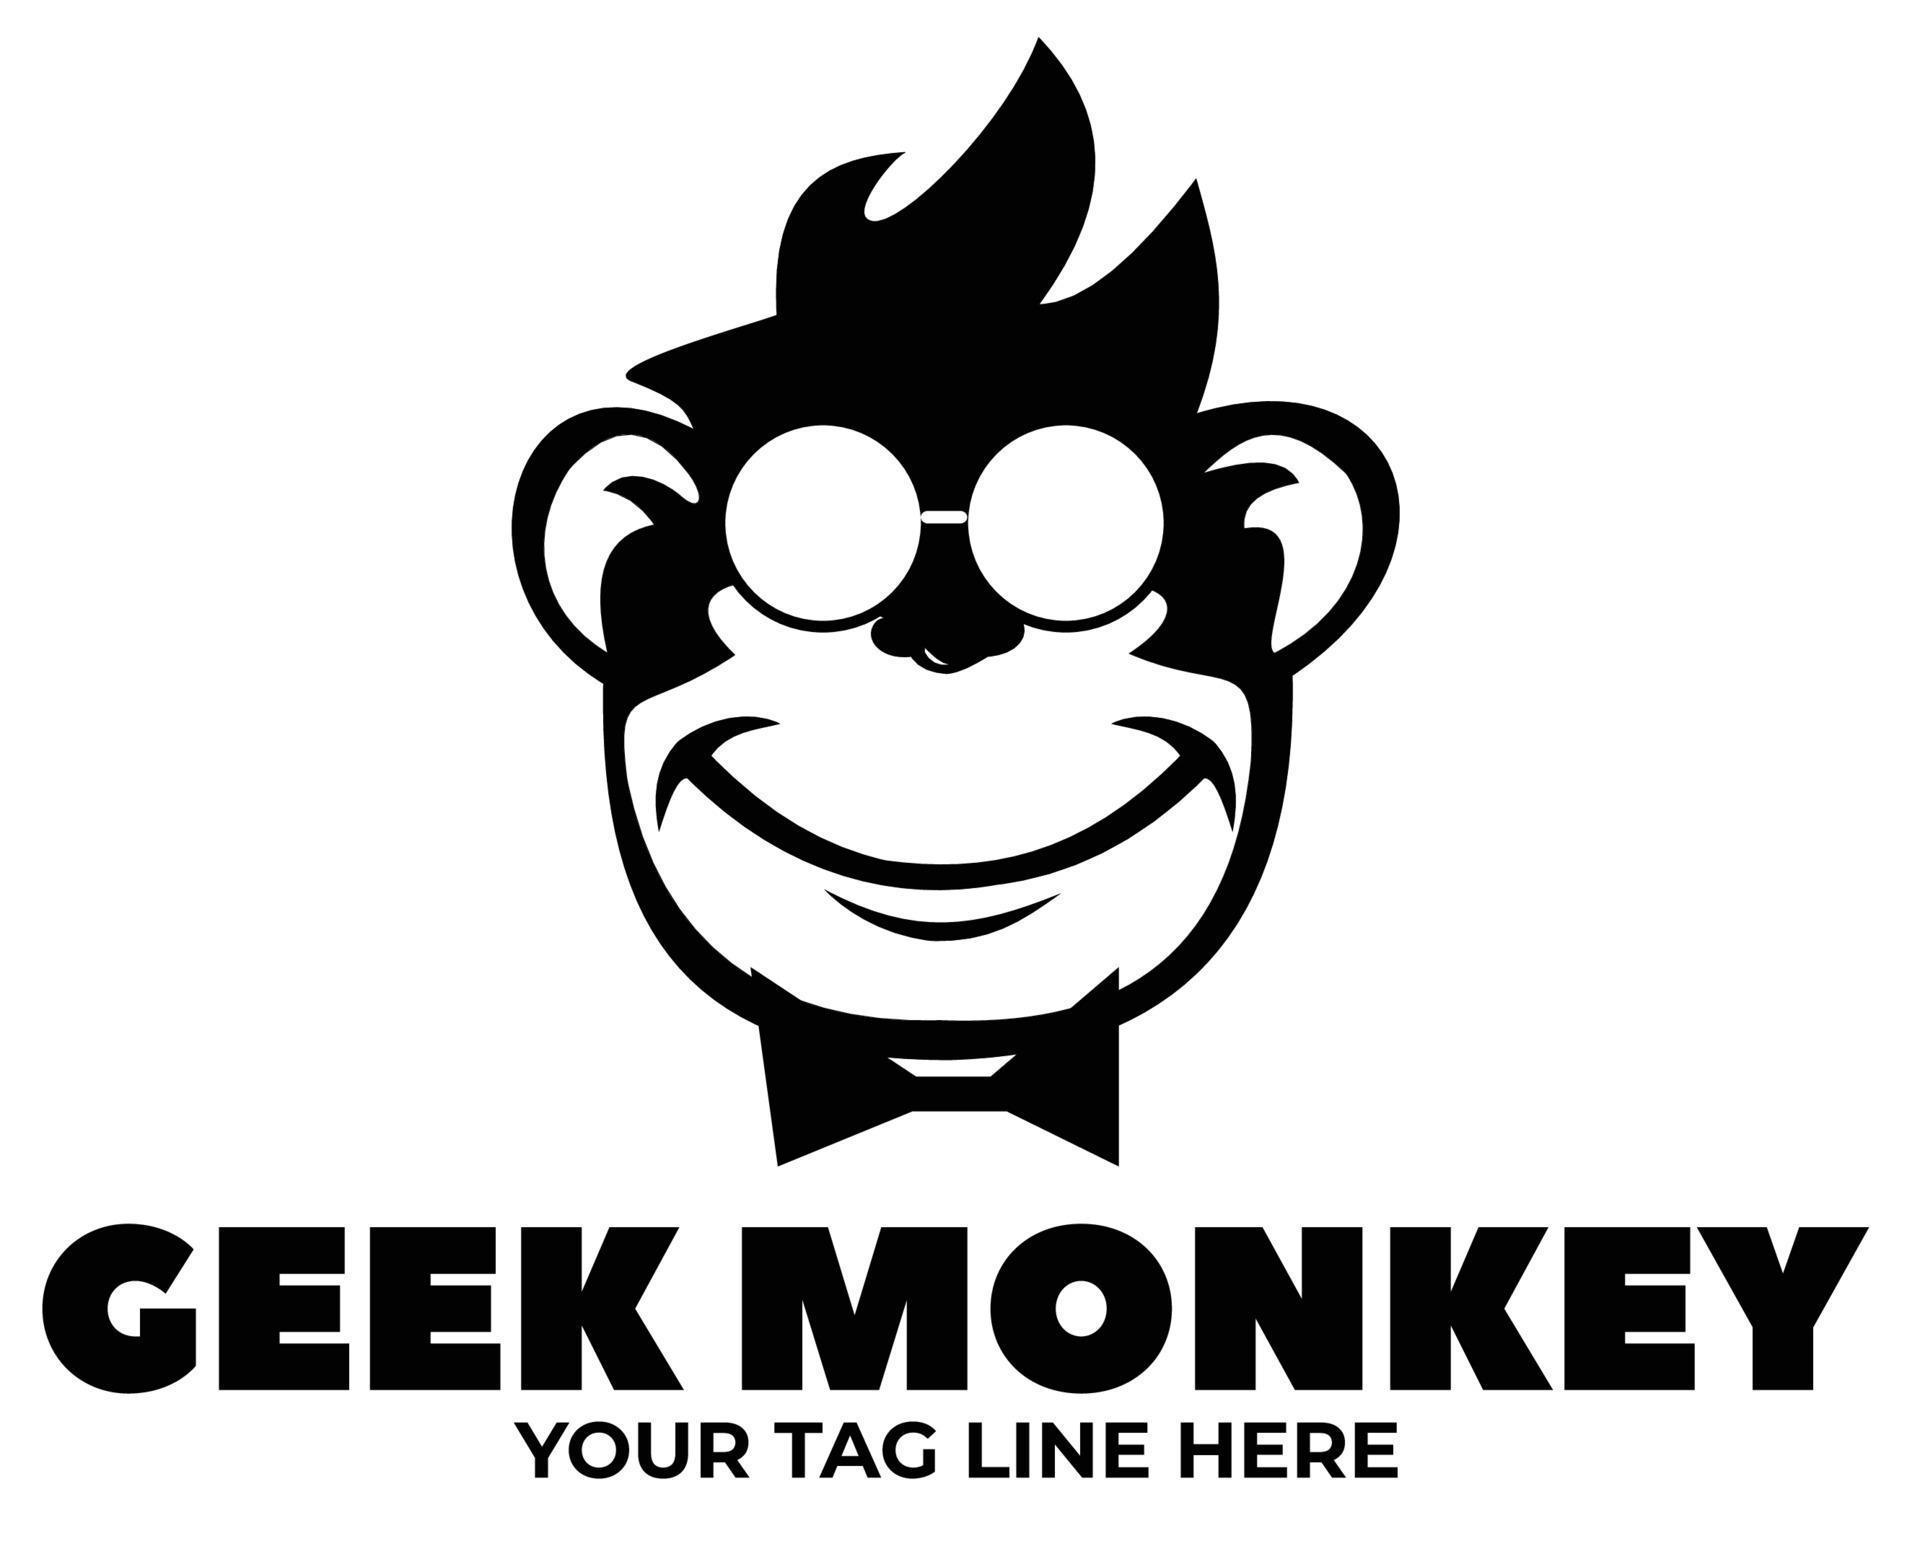 Monkey Geek Monkey Vector Logo Design 9208580 Vector Art At Vecteezy